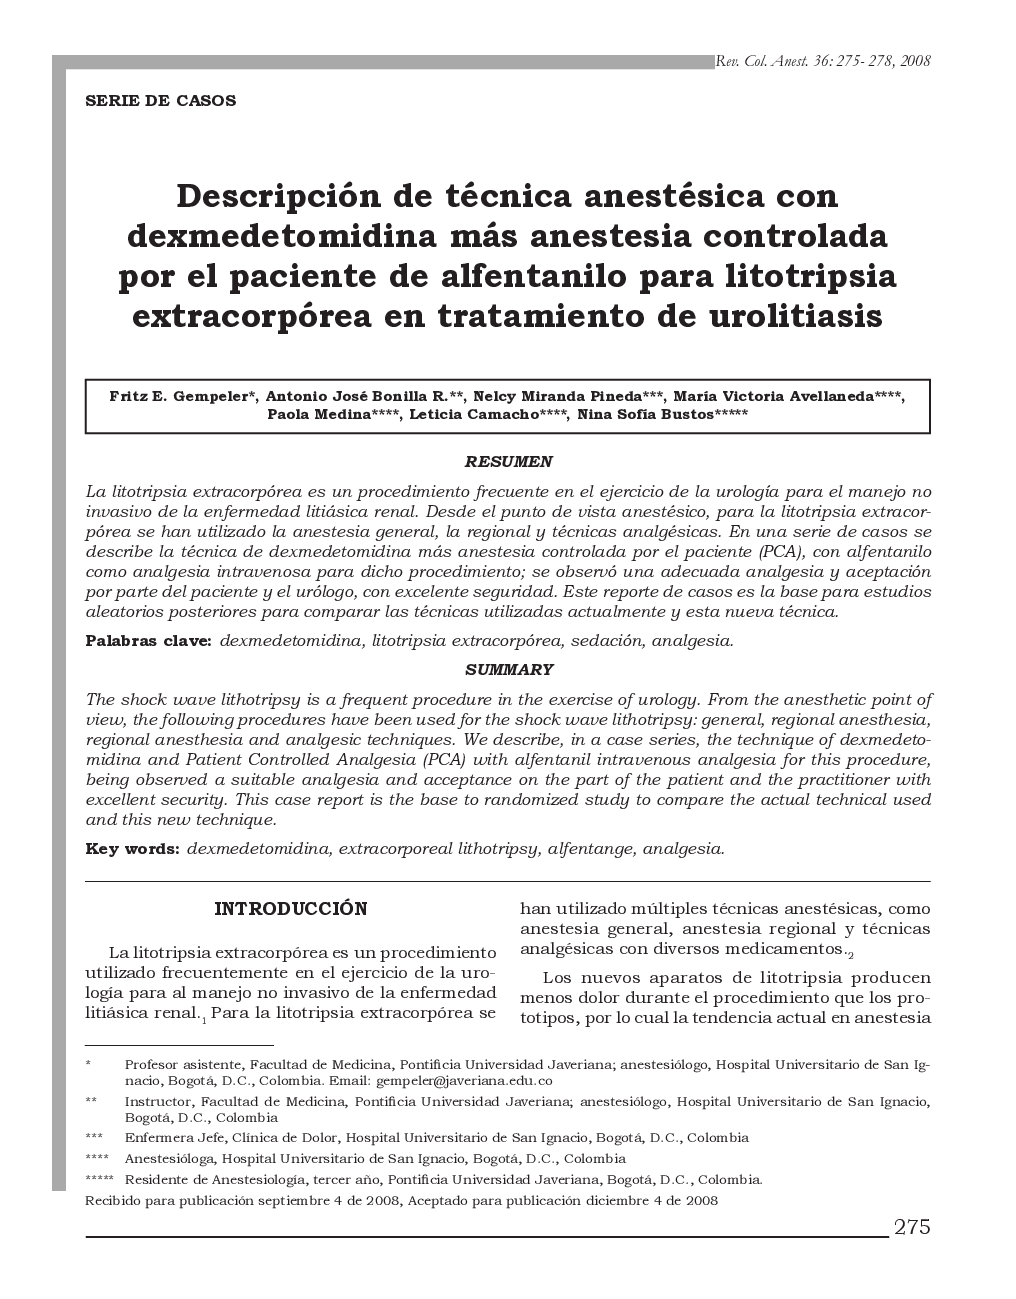 Descripción de técnica anestésica con dexmedetomidina más anestesia controlada por el paciente de alfentanilo para litotripsia extracorpórea en tratamiento de urolitiasis